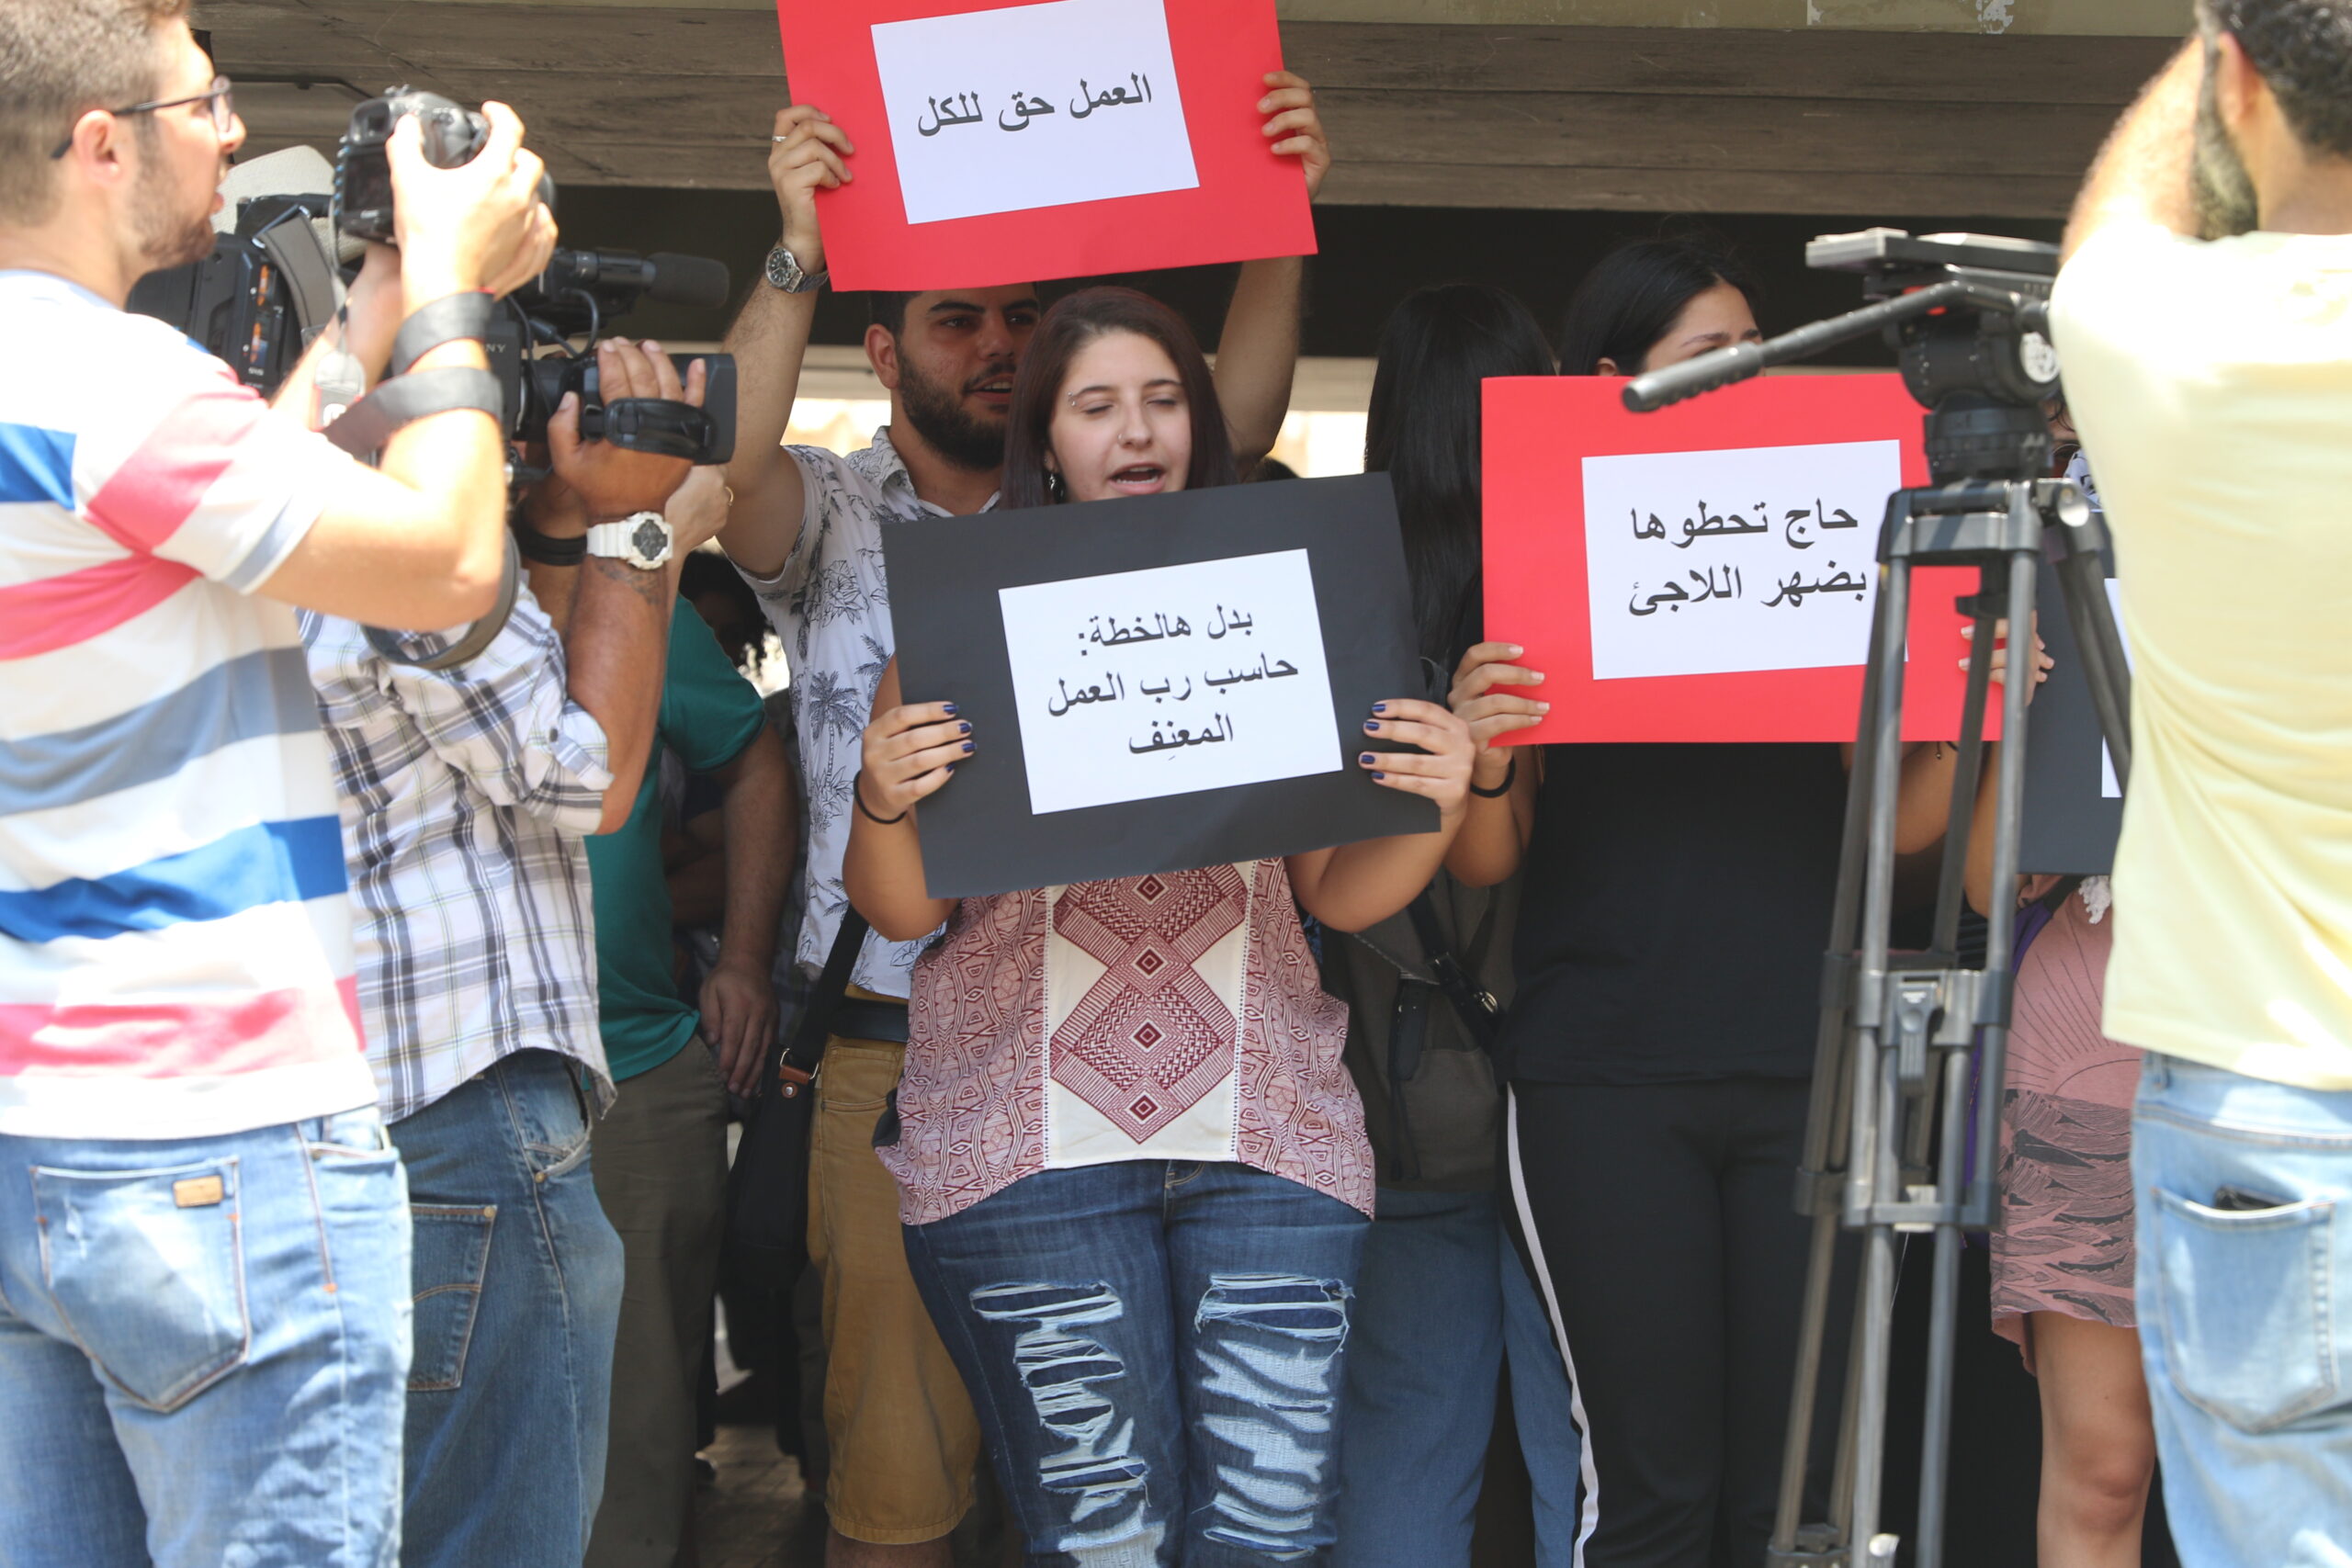 اعتصام دفاعا عن حق العمل للاجئين الفلسطينيين: “حاج تحطوها بضهر اللاجئ”